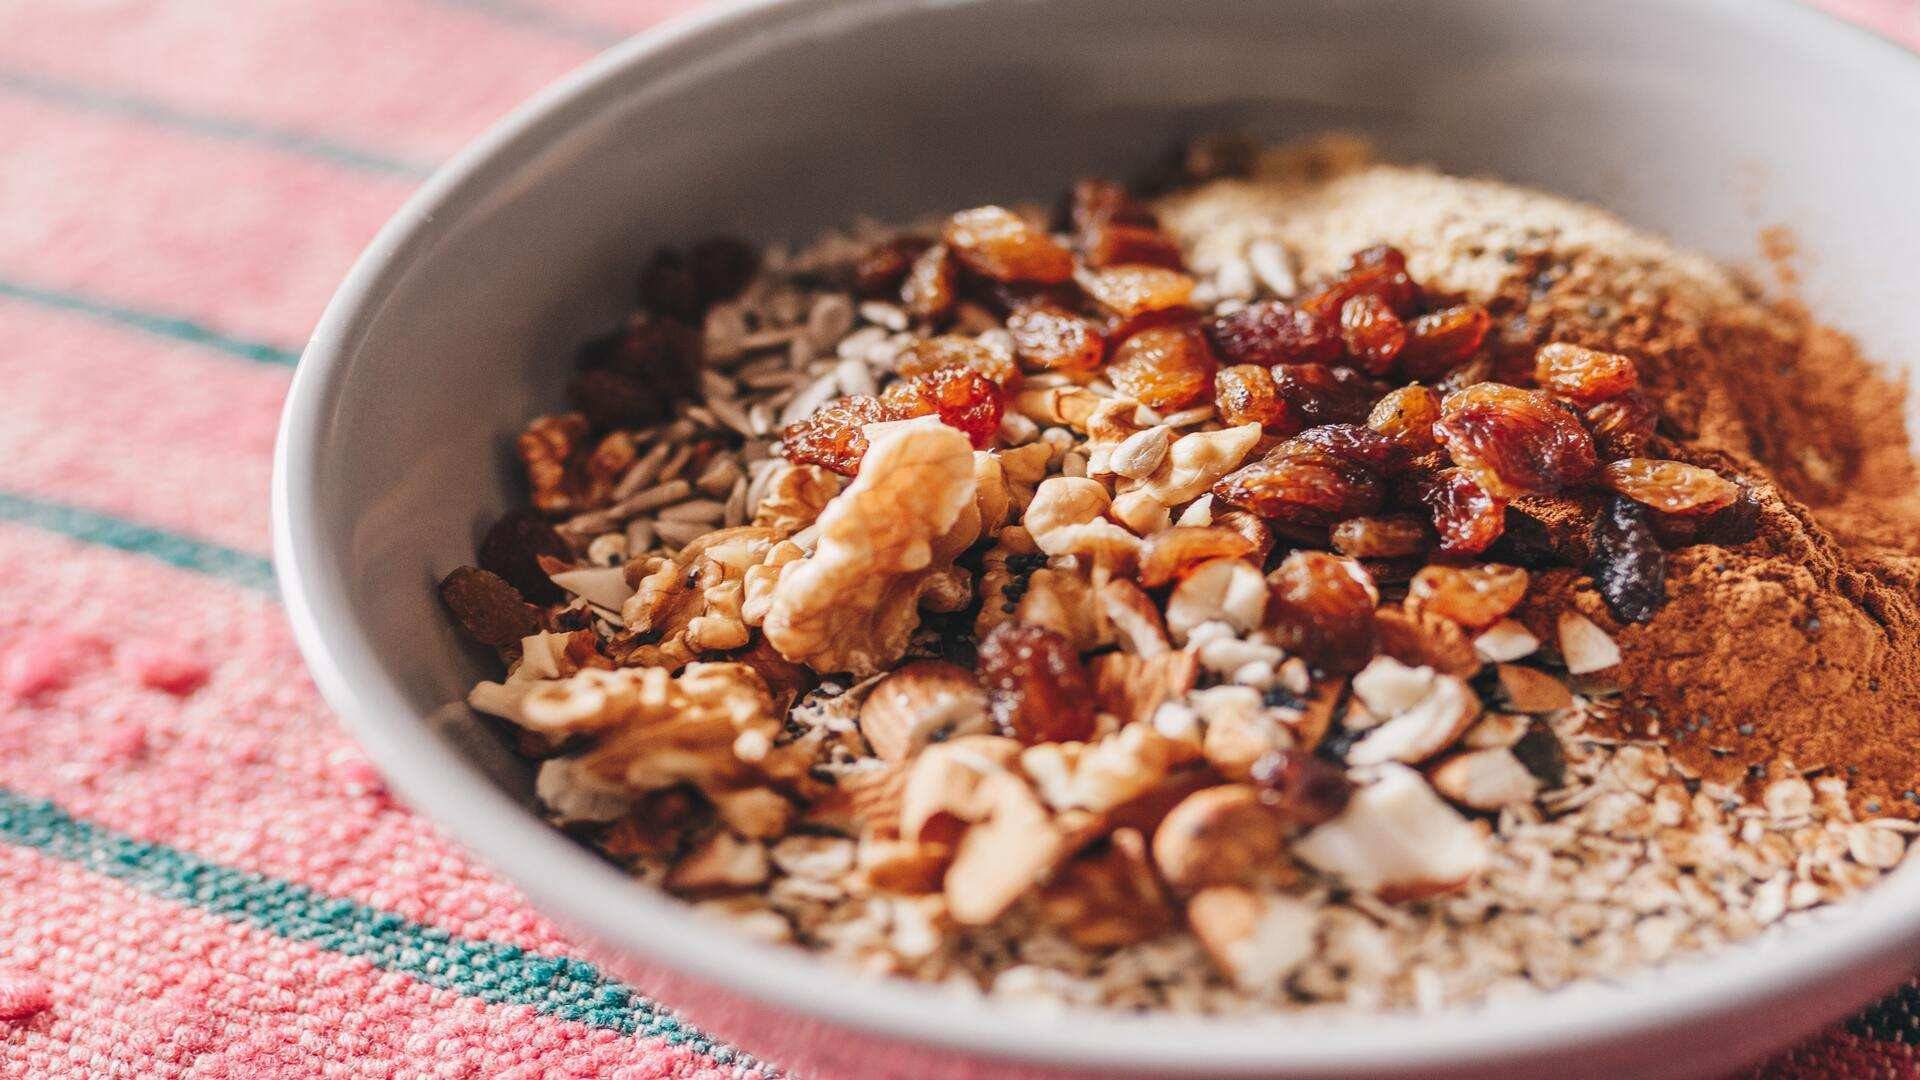 Receta de Overnight oats: un desayuno con muchos beneficios